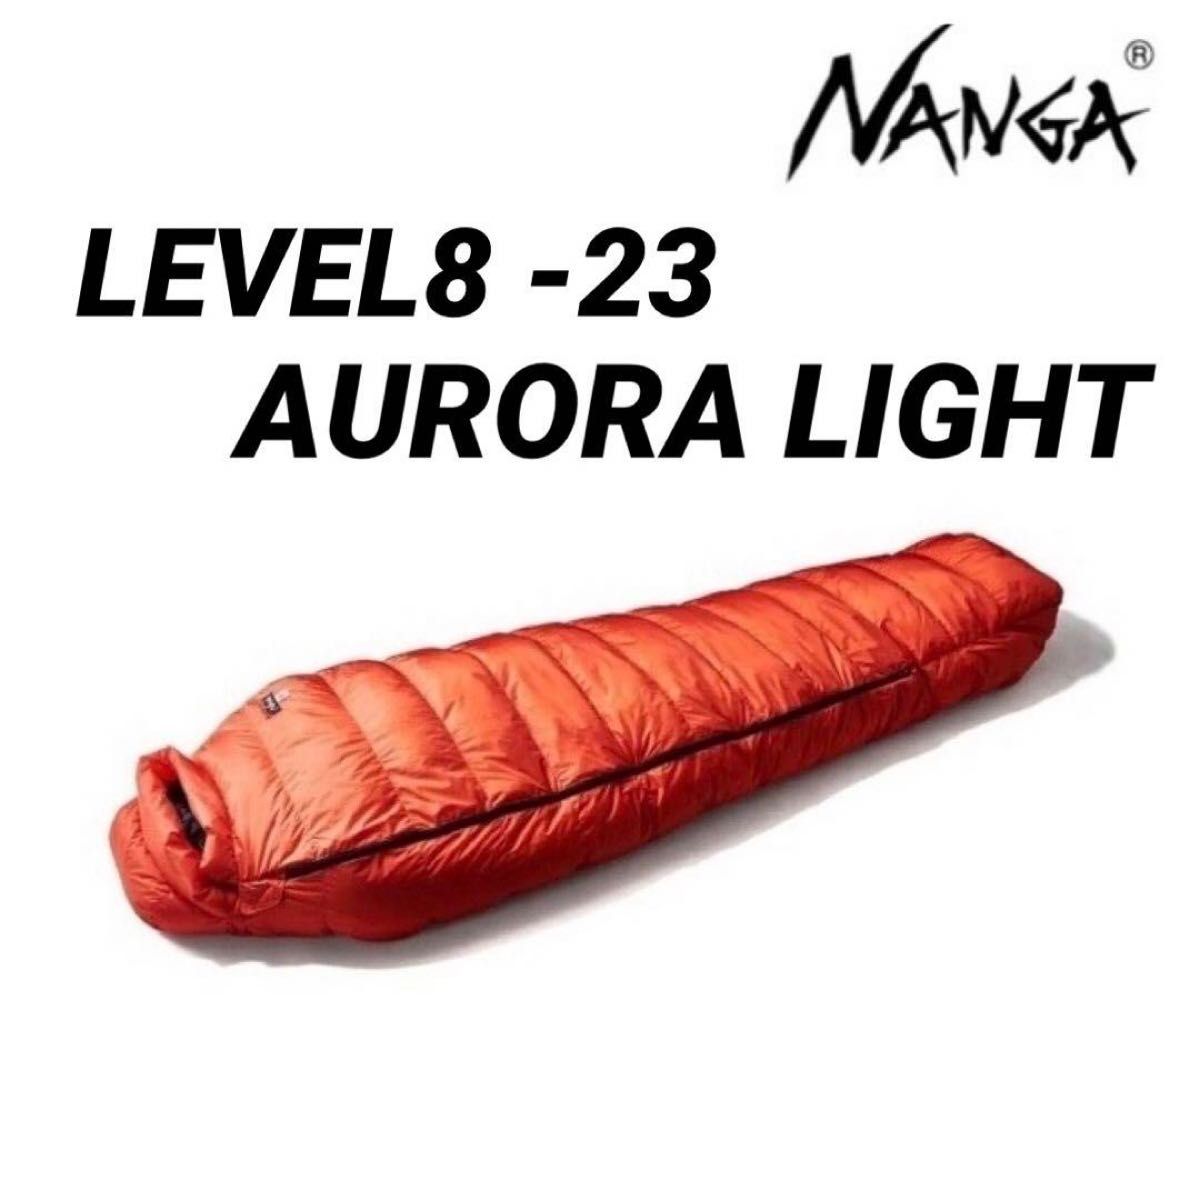 ナンガ NANGA LEVEL 8 -23 AURORA LIGHT レベル8 -23 オーロラライト